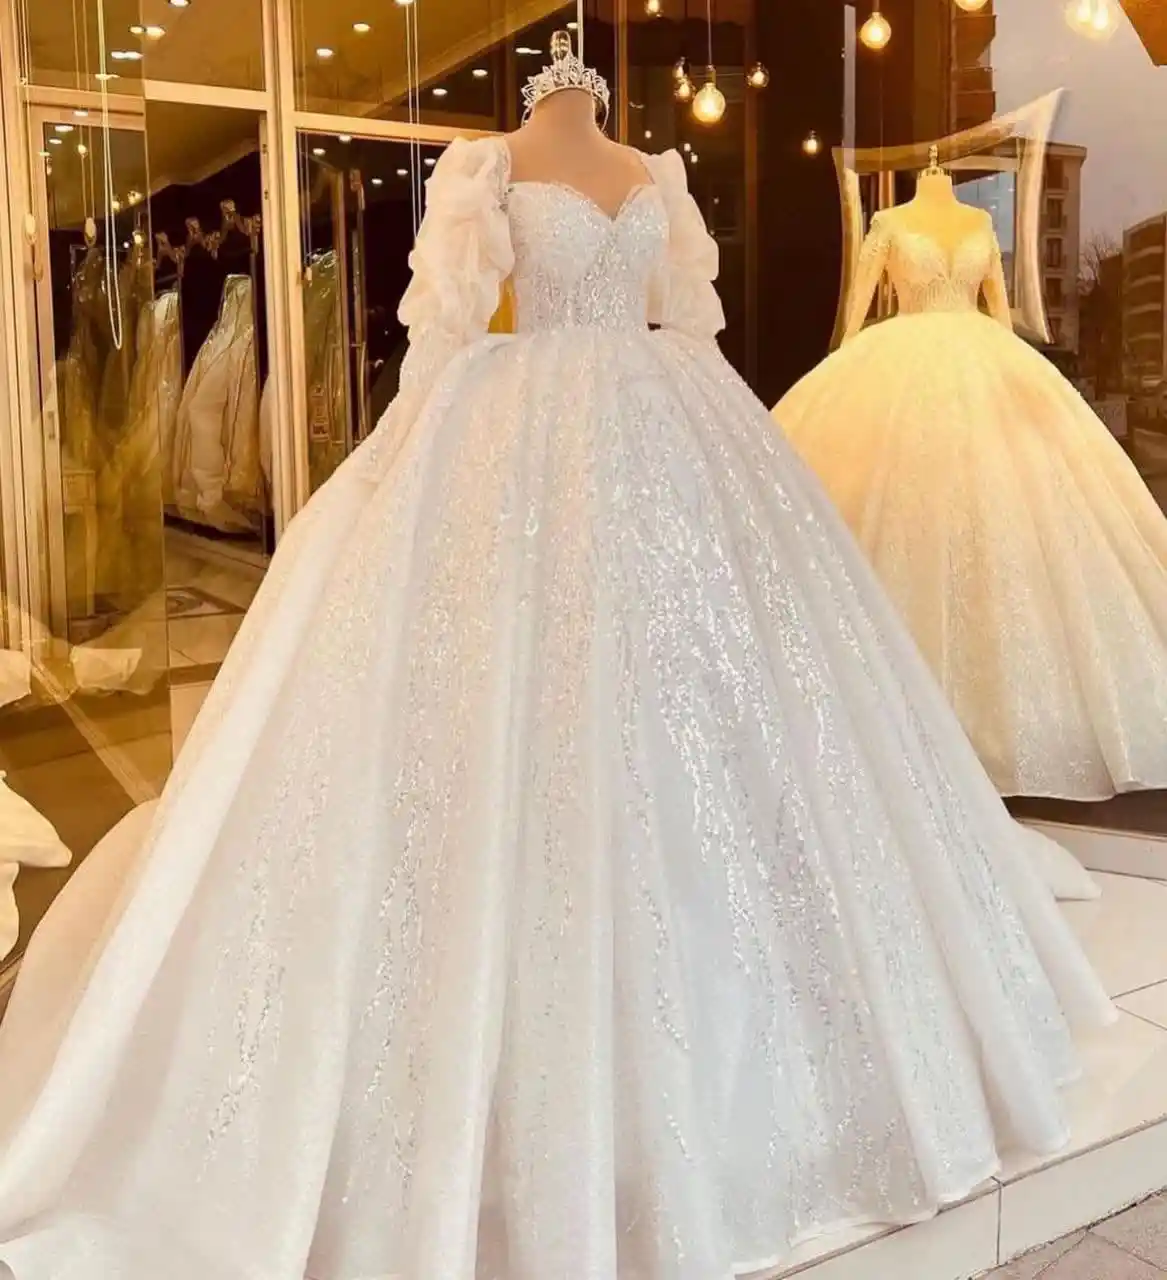 66 مدل لباس عروس جذاب و متنوع | گالری لباس عروس آفوربیا